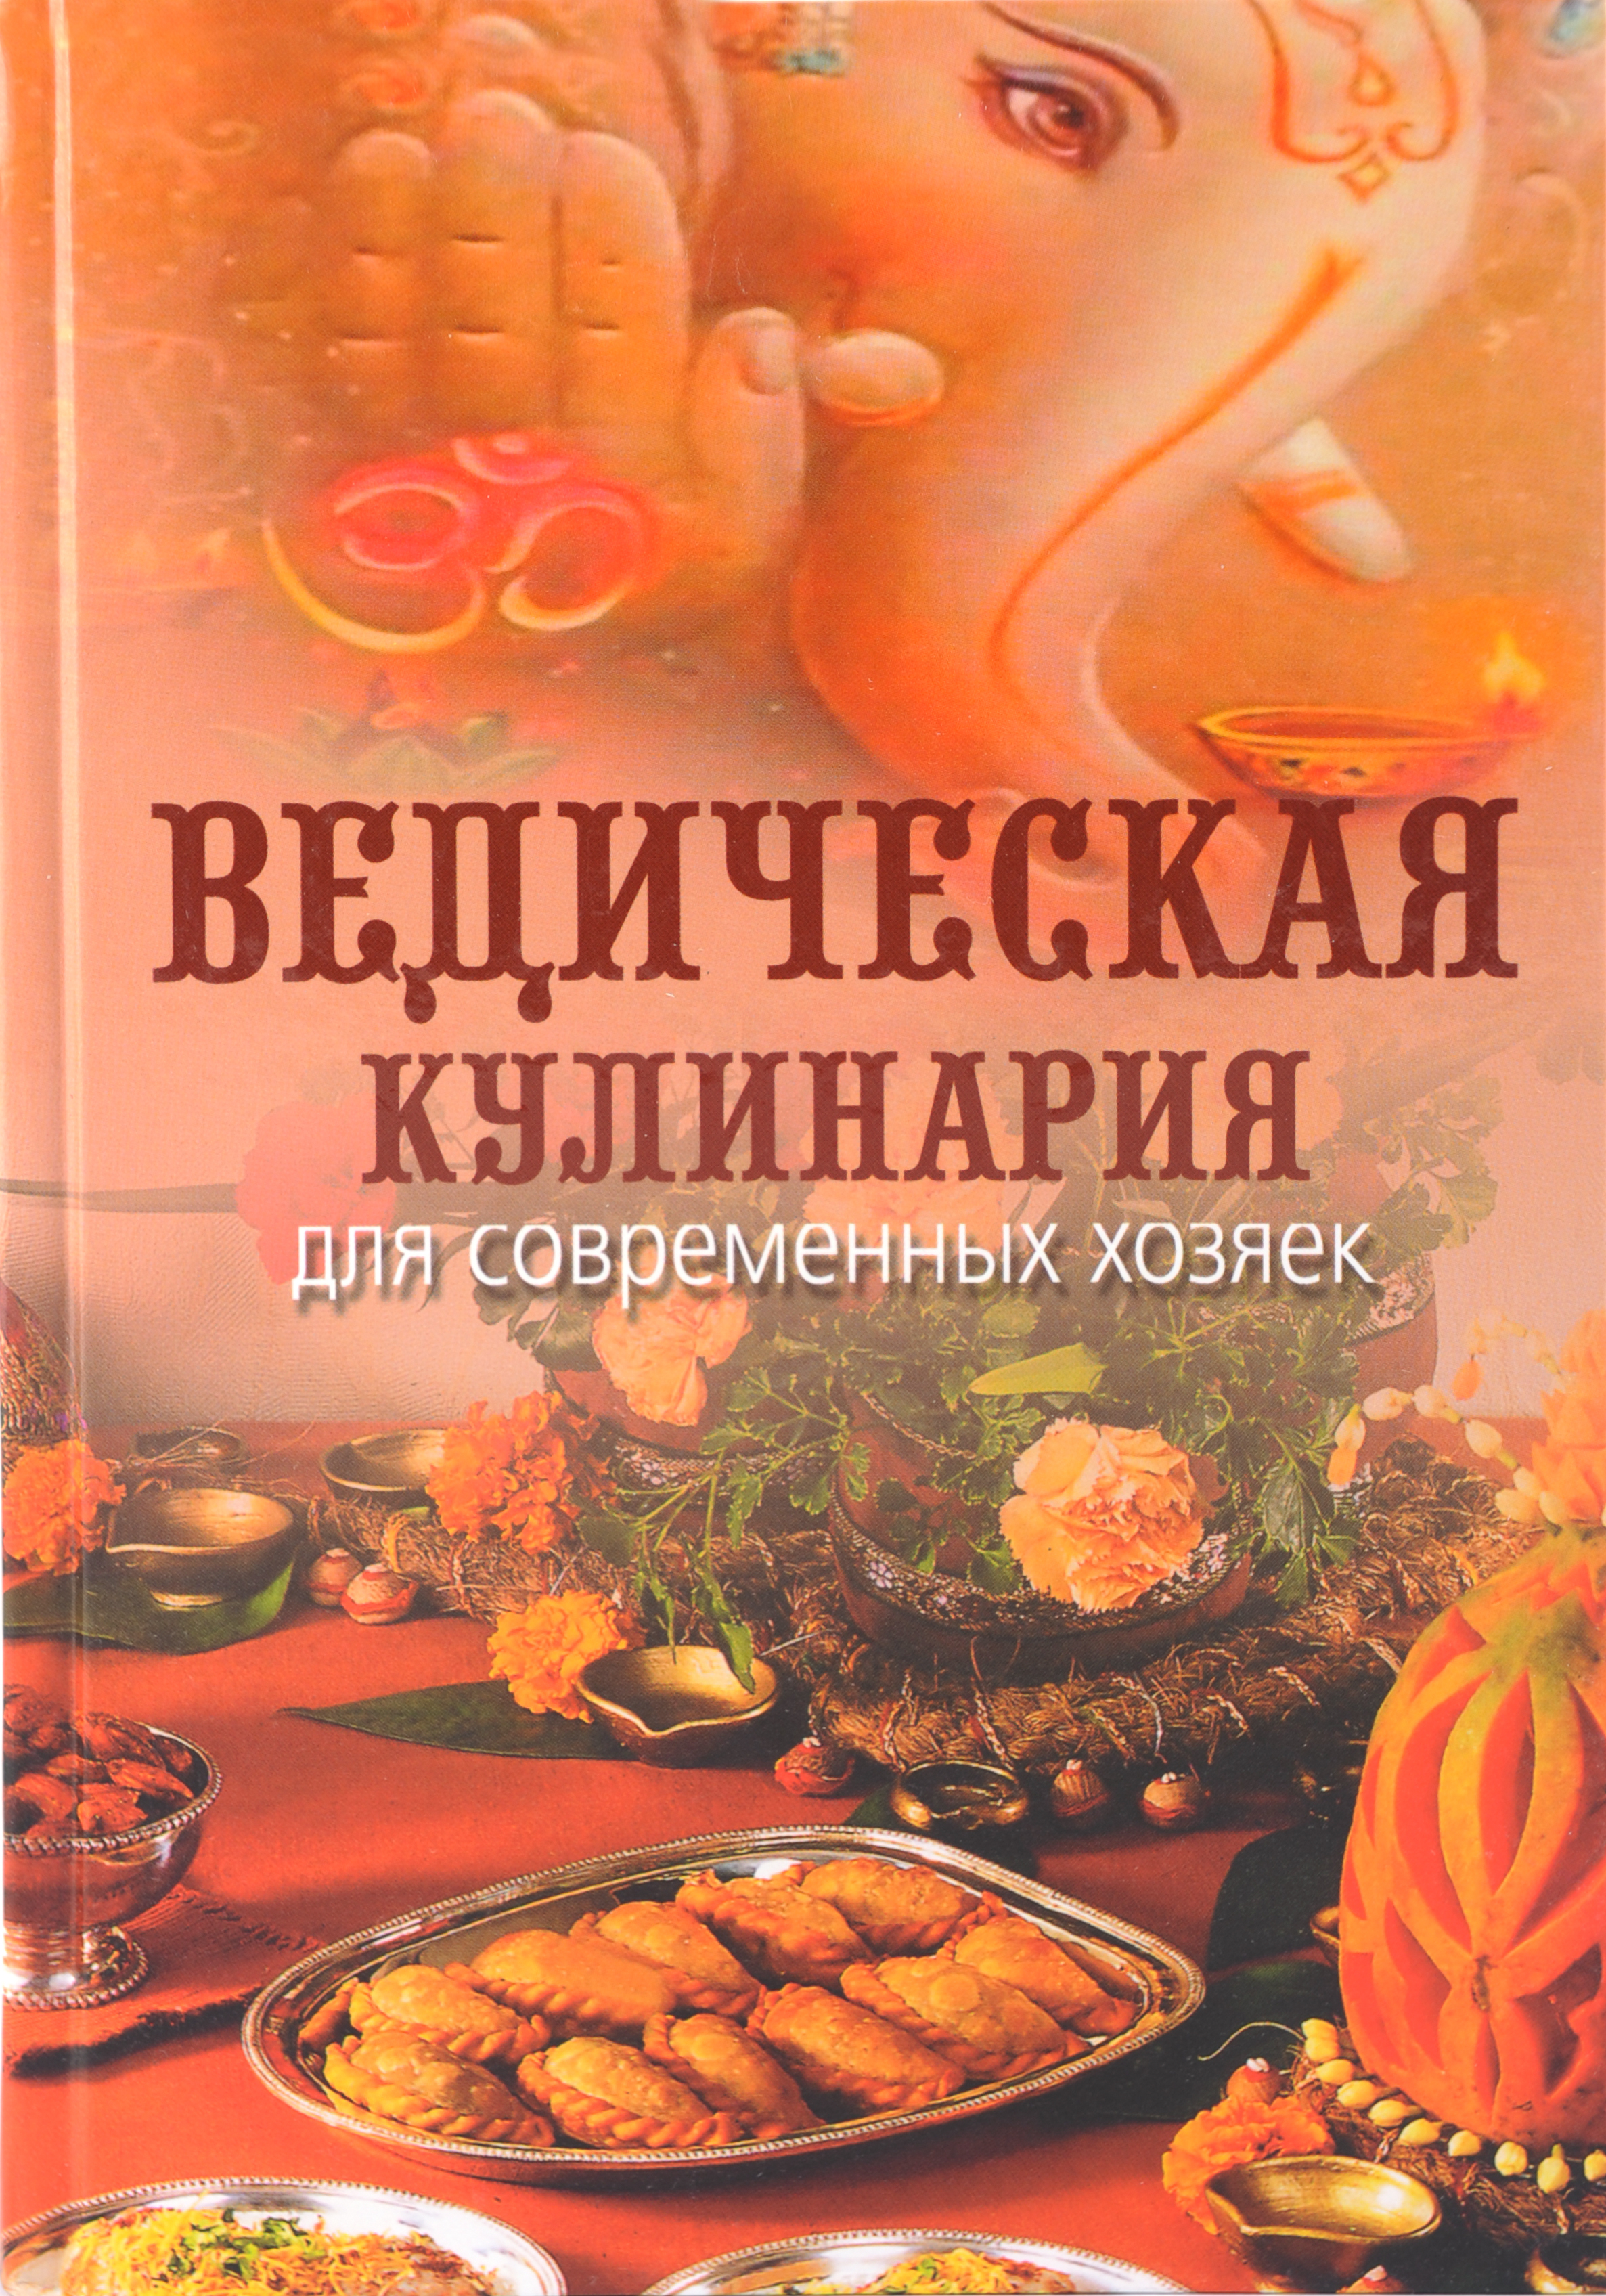 Книги ведическая кулинария скачать бесплатно